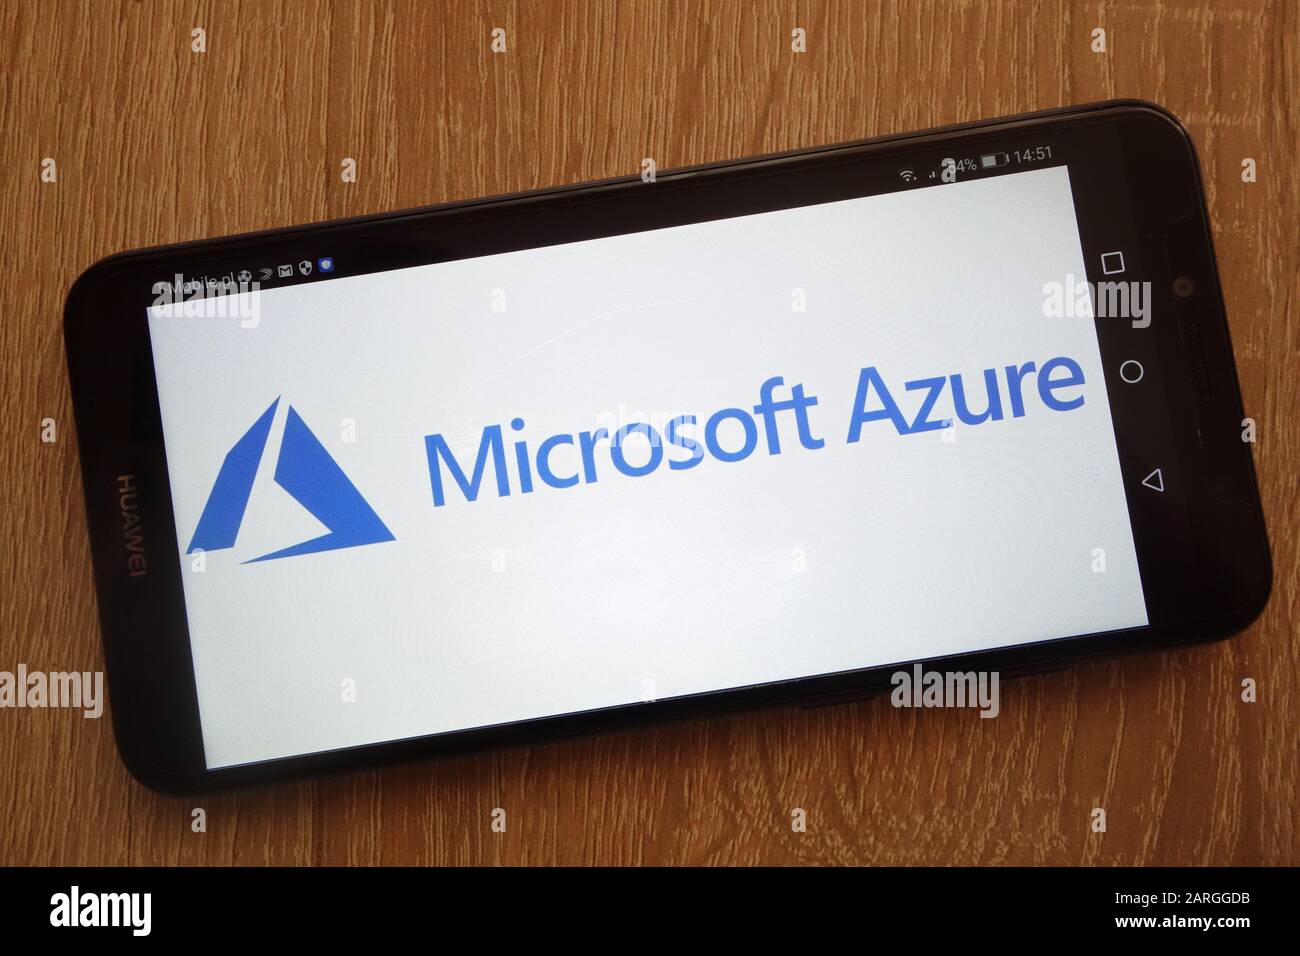 Logo Microsoft Azure visualizzato su uno smartphone moderno Foto Stock